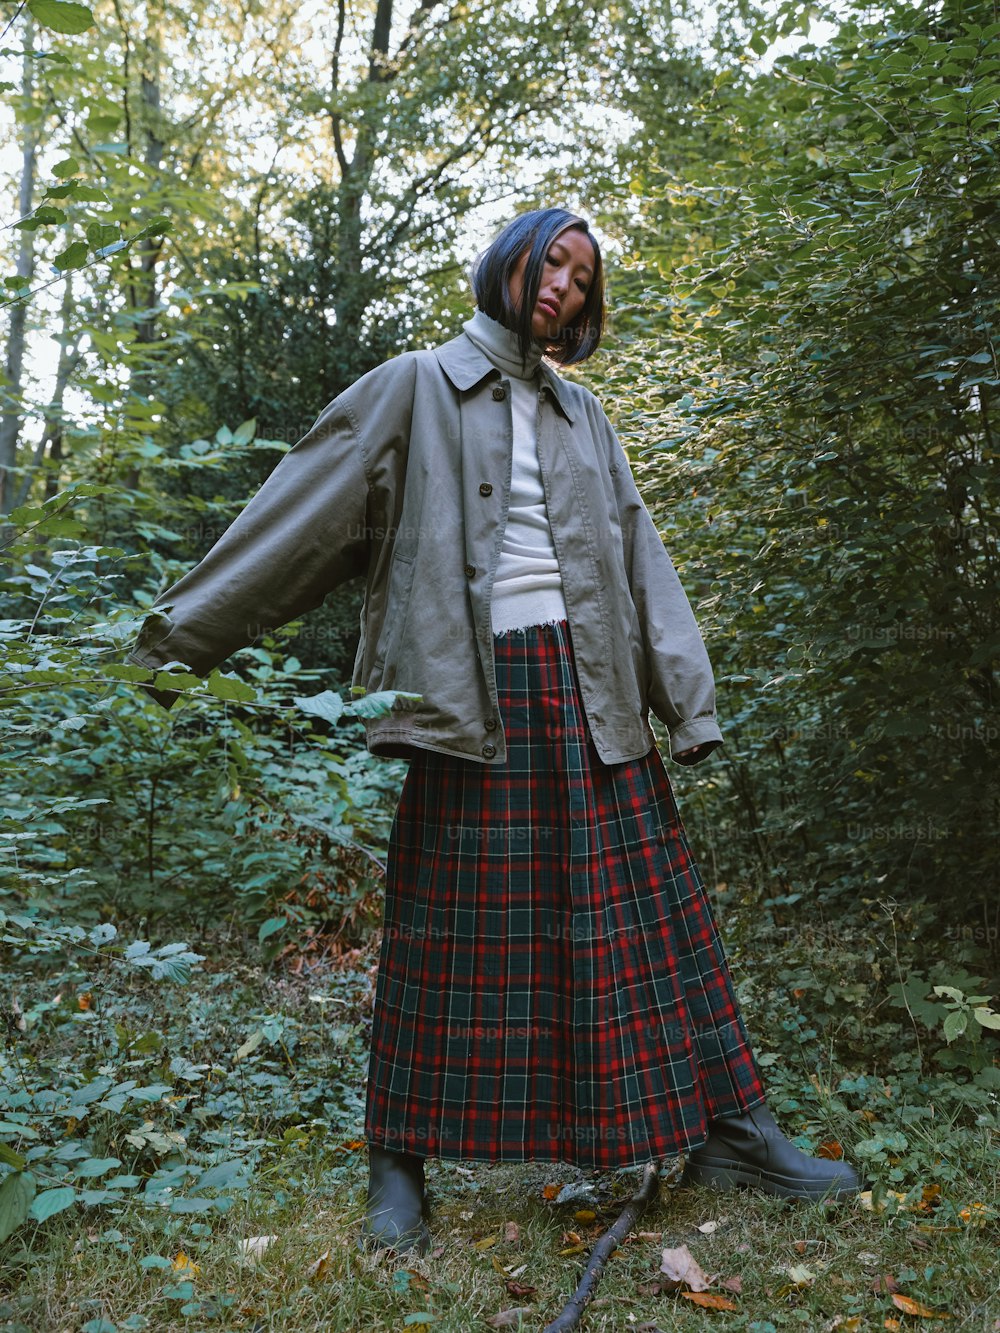 Una donna in piedi nel bosco che indossa una gonna e una giacca